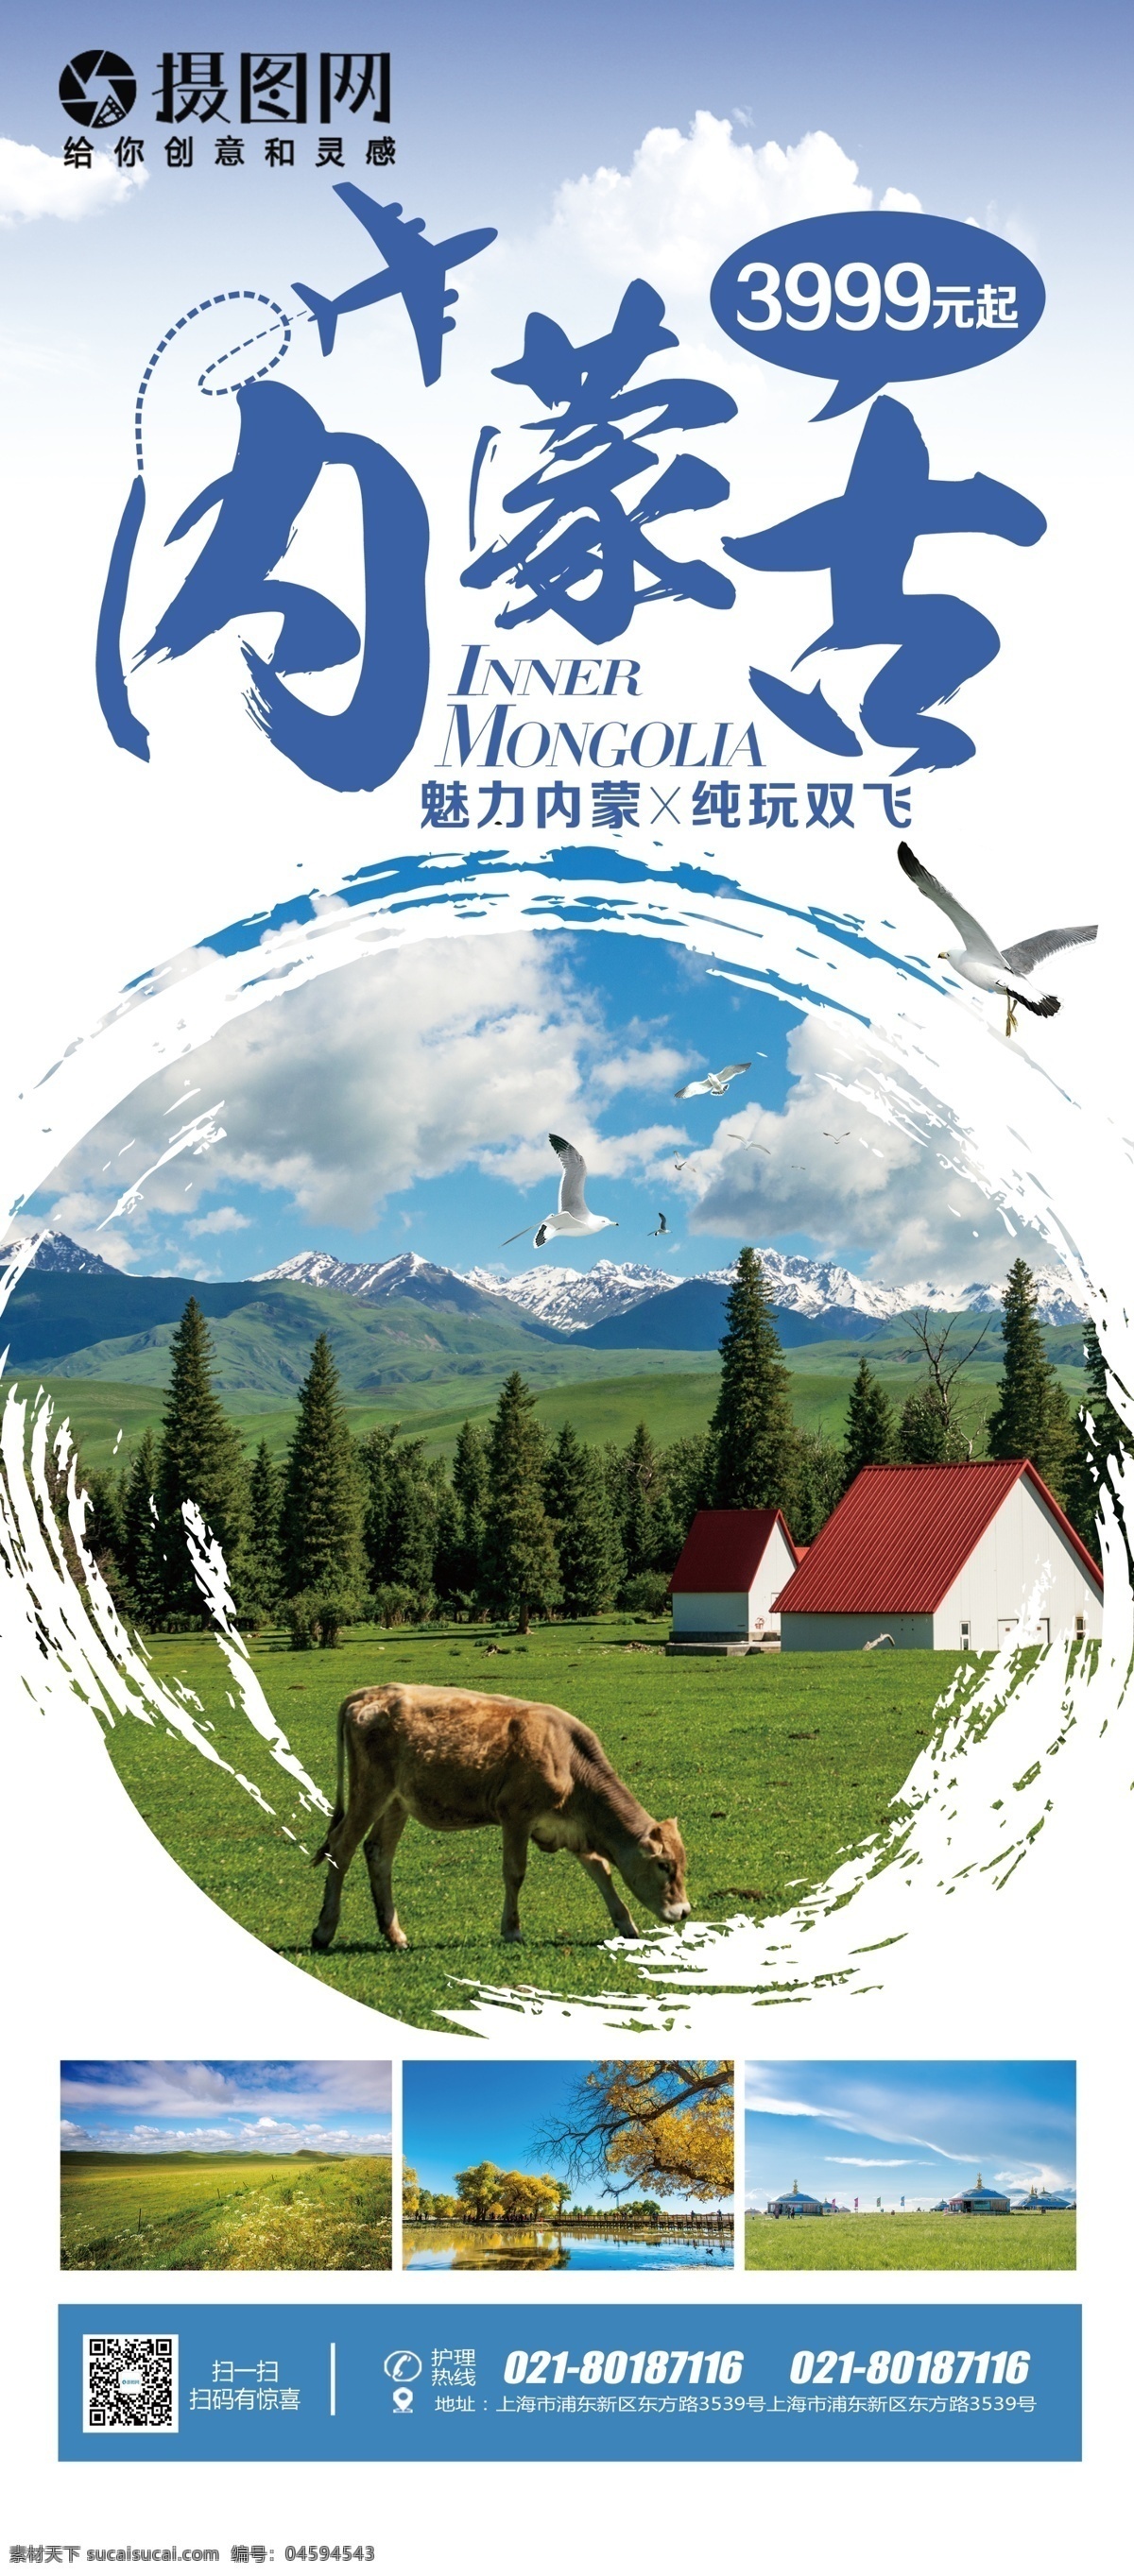 蓝色 简约 大气 内蒙古 旅游 促销 宣传 x 展架 易拉宝 宣传x展架